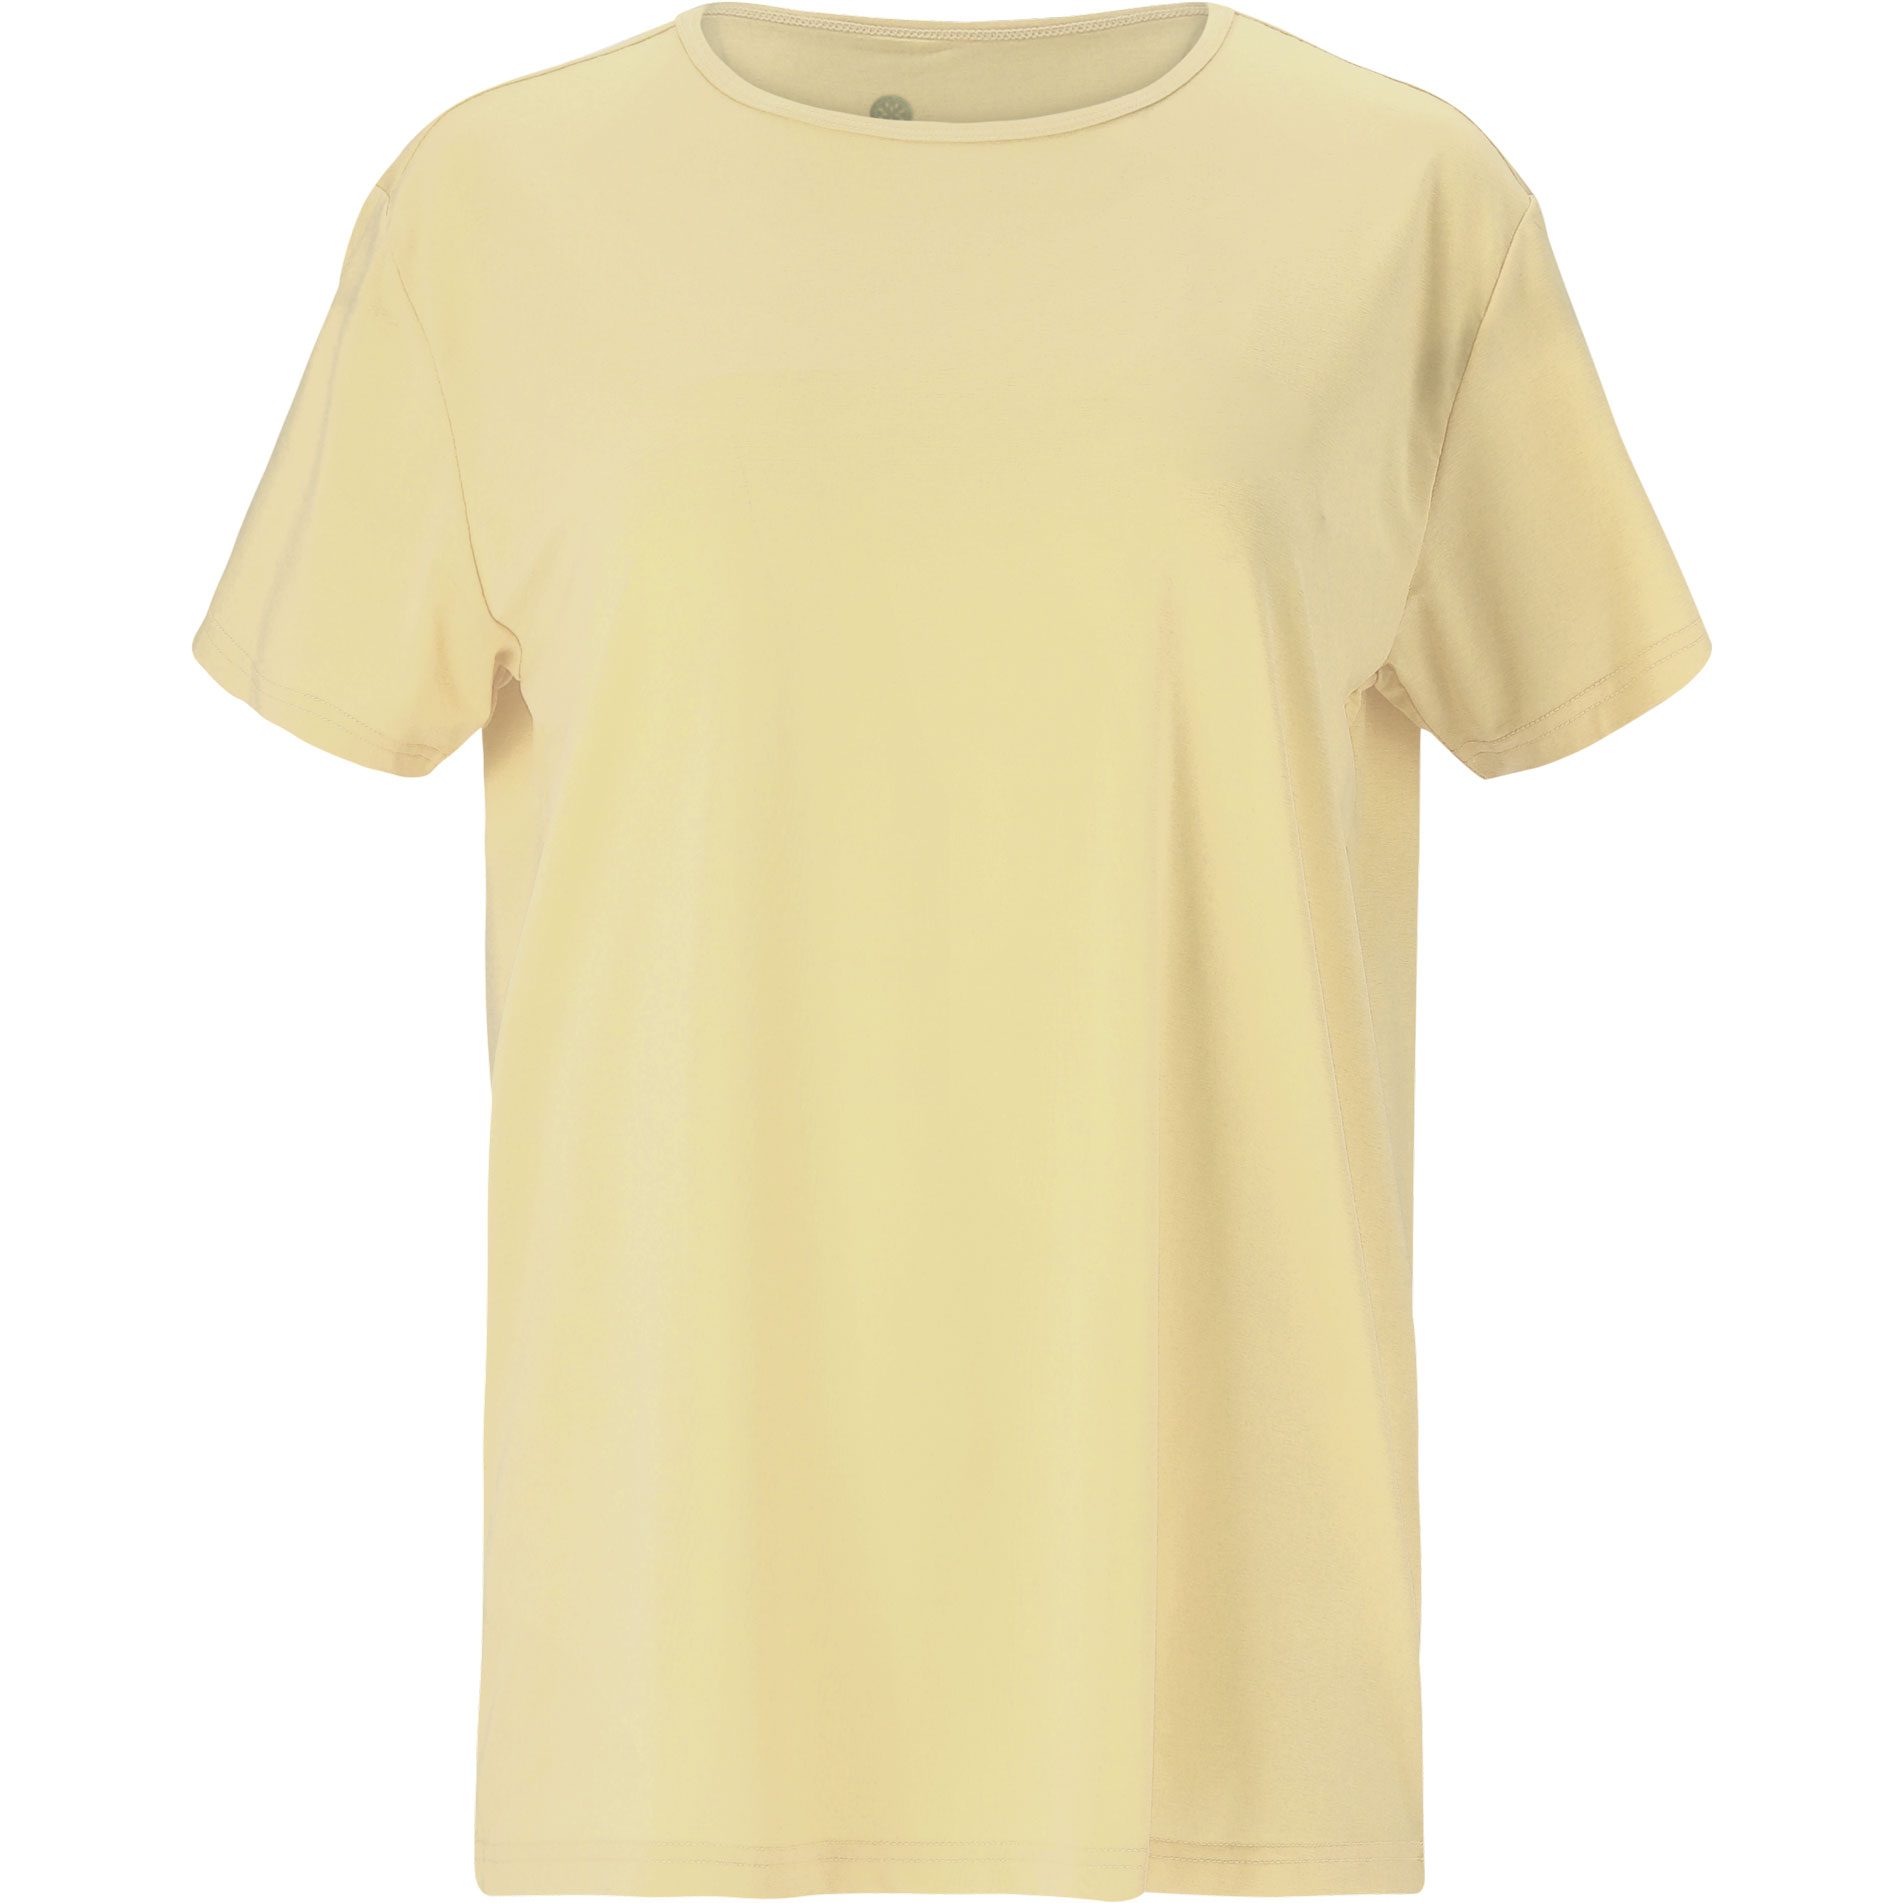 Athlecia - Lizzy Sport Bittl Damen im Slub Shop lemon kaufen T-Shirt icing W